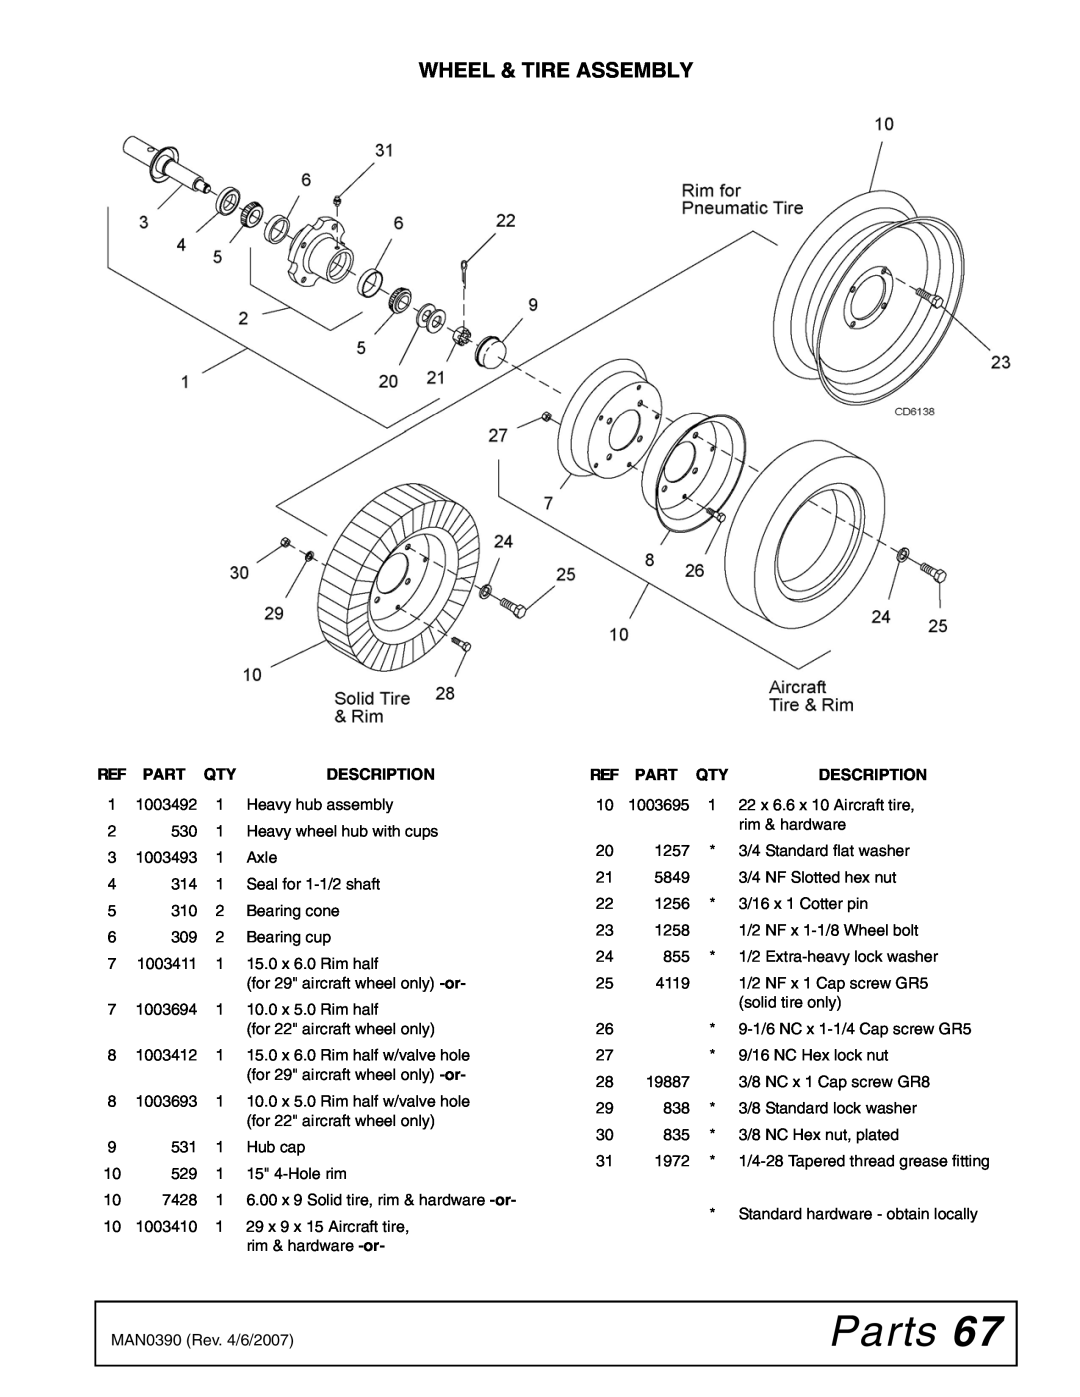 Woods Equipment DS120, DS96 manual Parts, Wheel & Tire Assembly, Description 